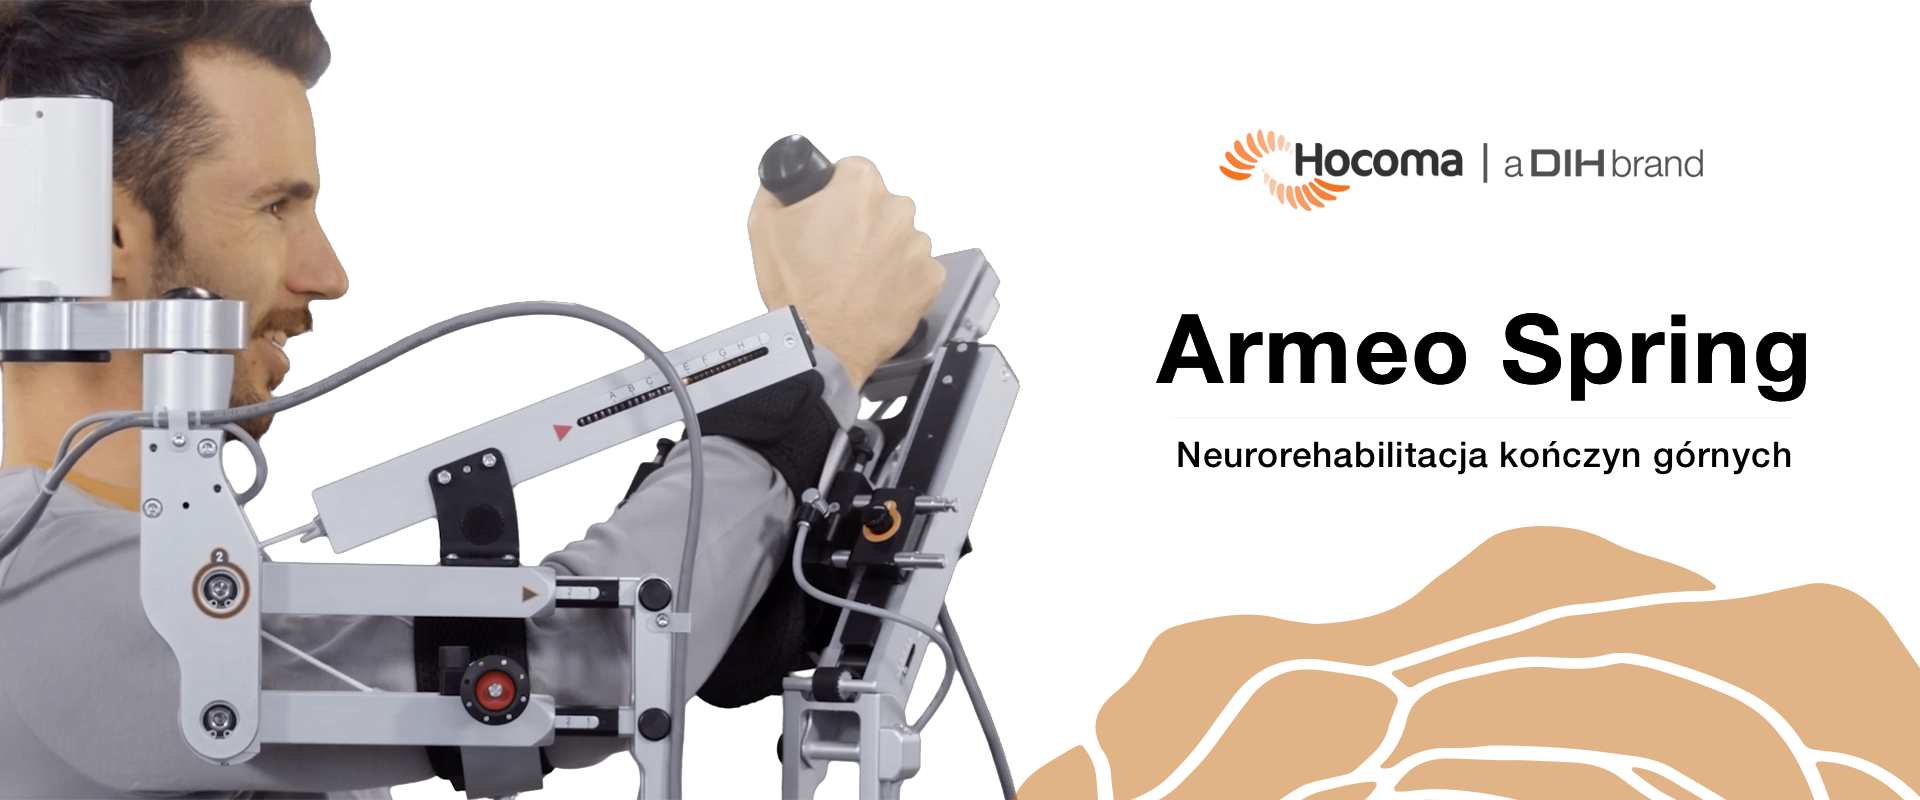 Armeo®Spring - Urządzenie z zaawansowanym mechanizmem sprężynowym do rehabilitacji kończyny górnej